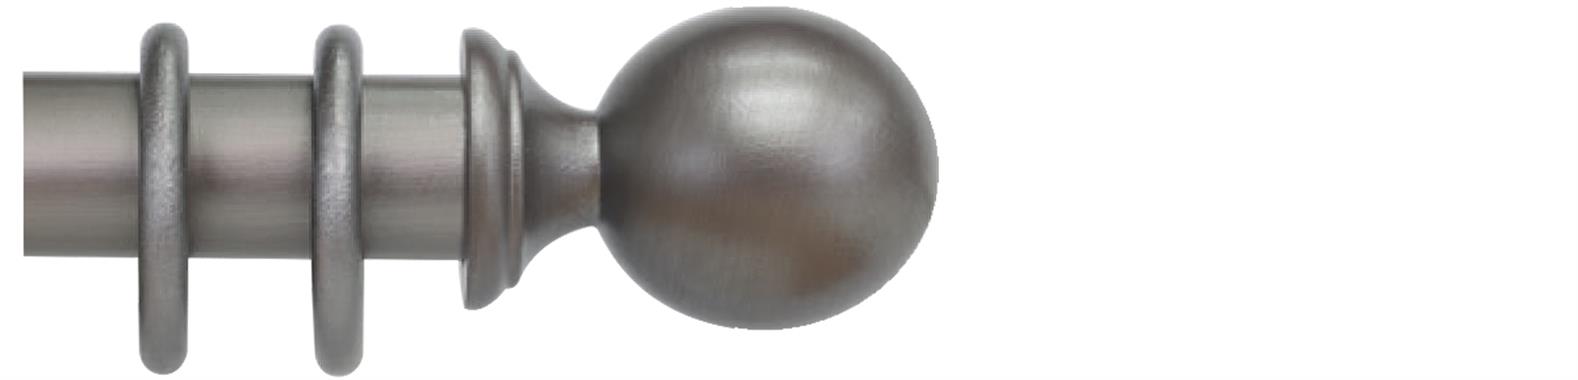 Cameron Fuller 63mm Pole Baroque Ball